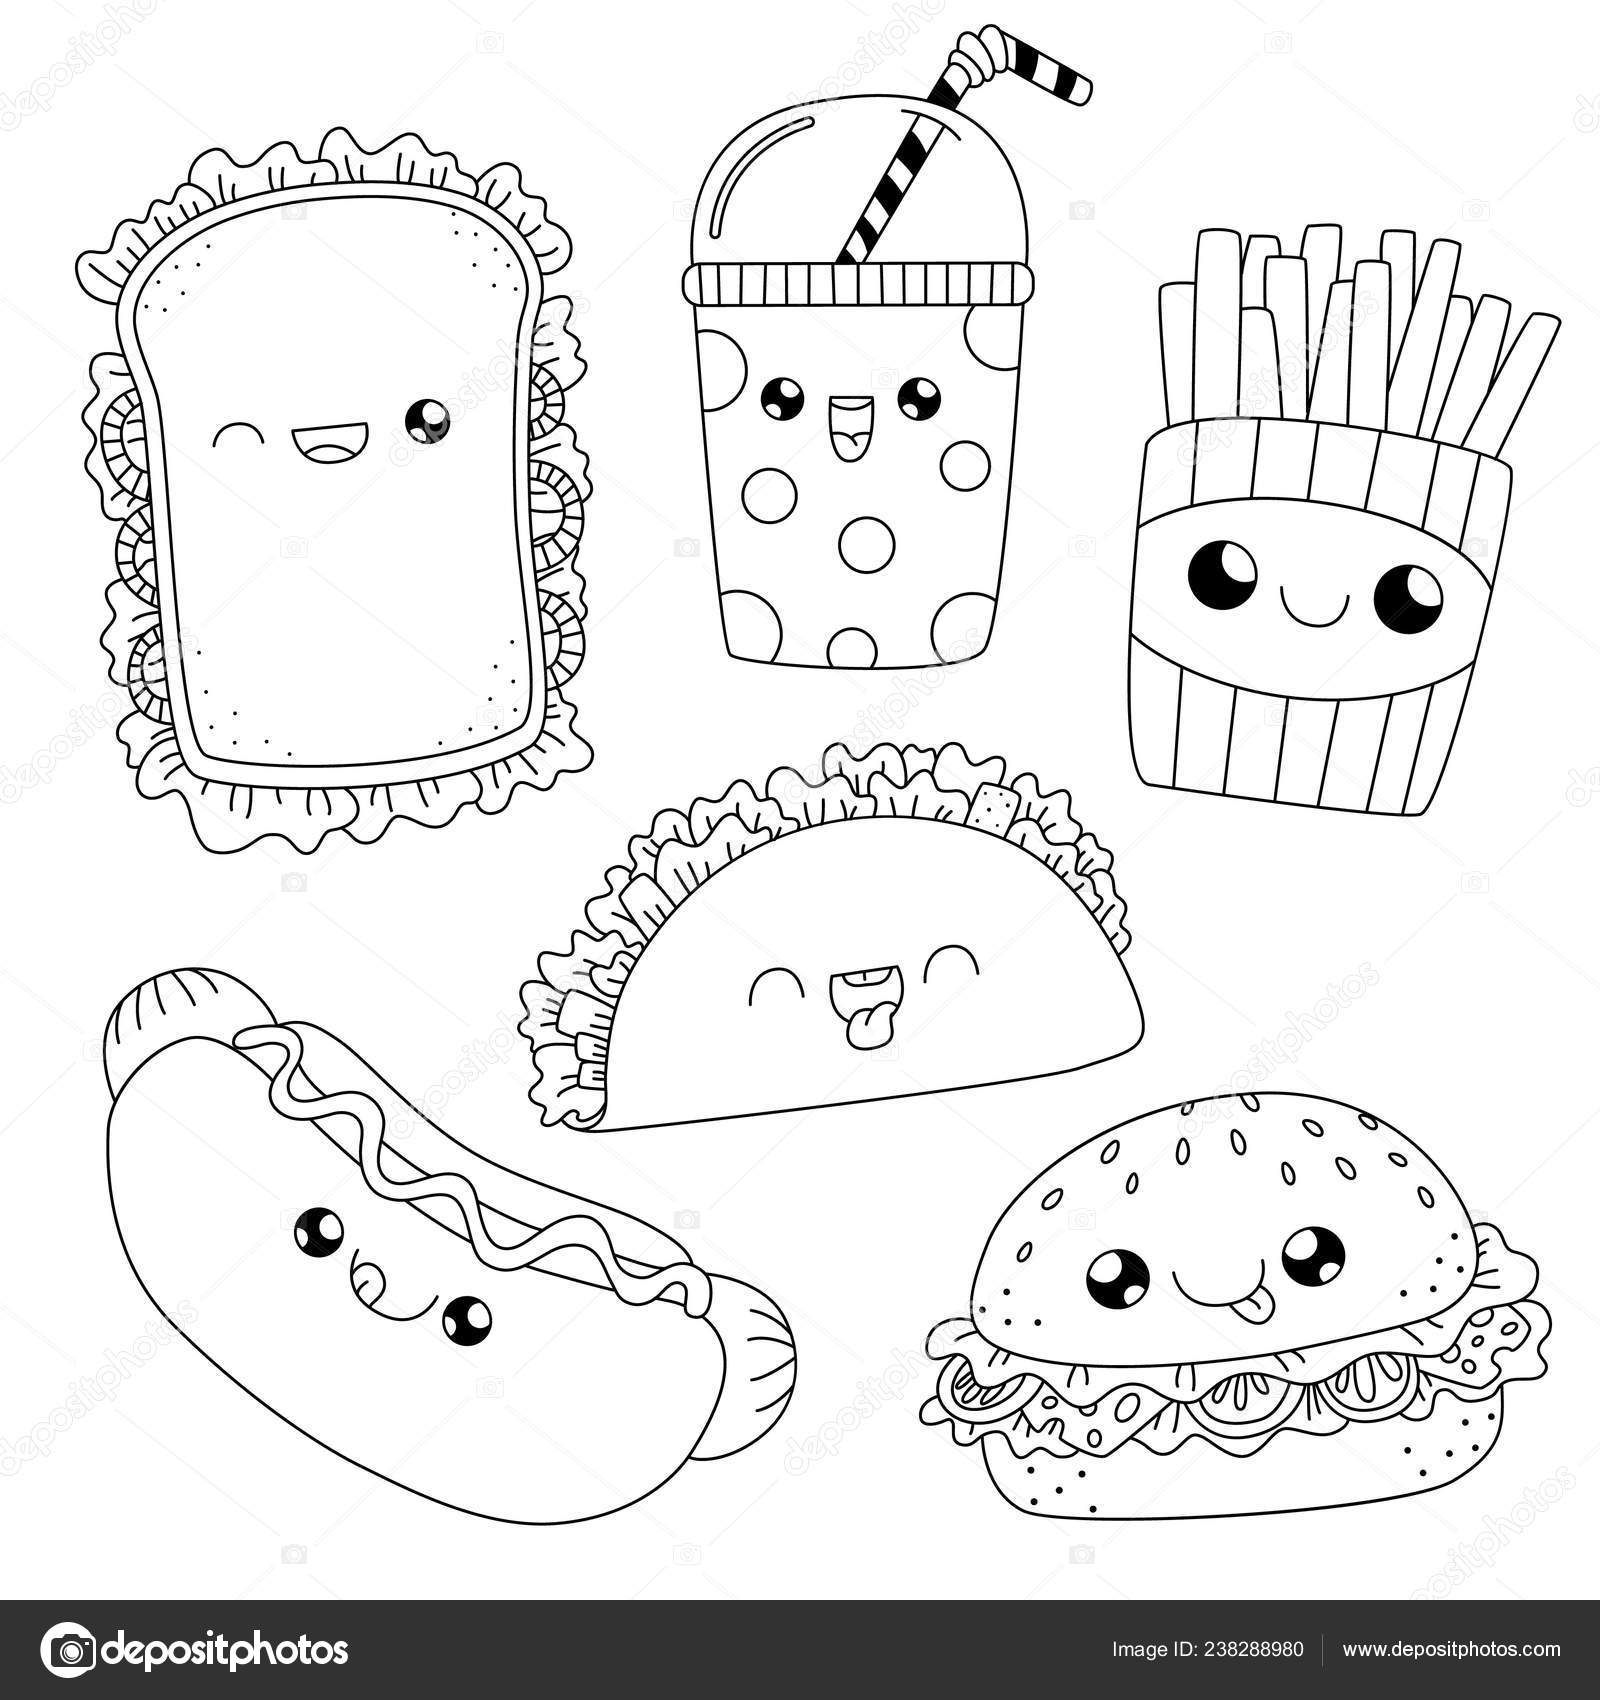 Colorear Bookfast Doodle De Alimentos Vector De Stock Balakoboz